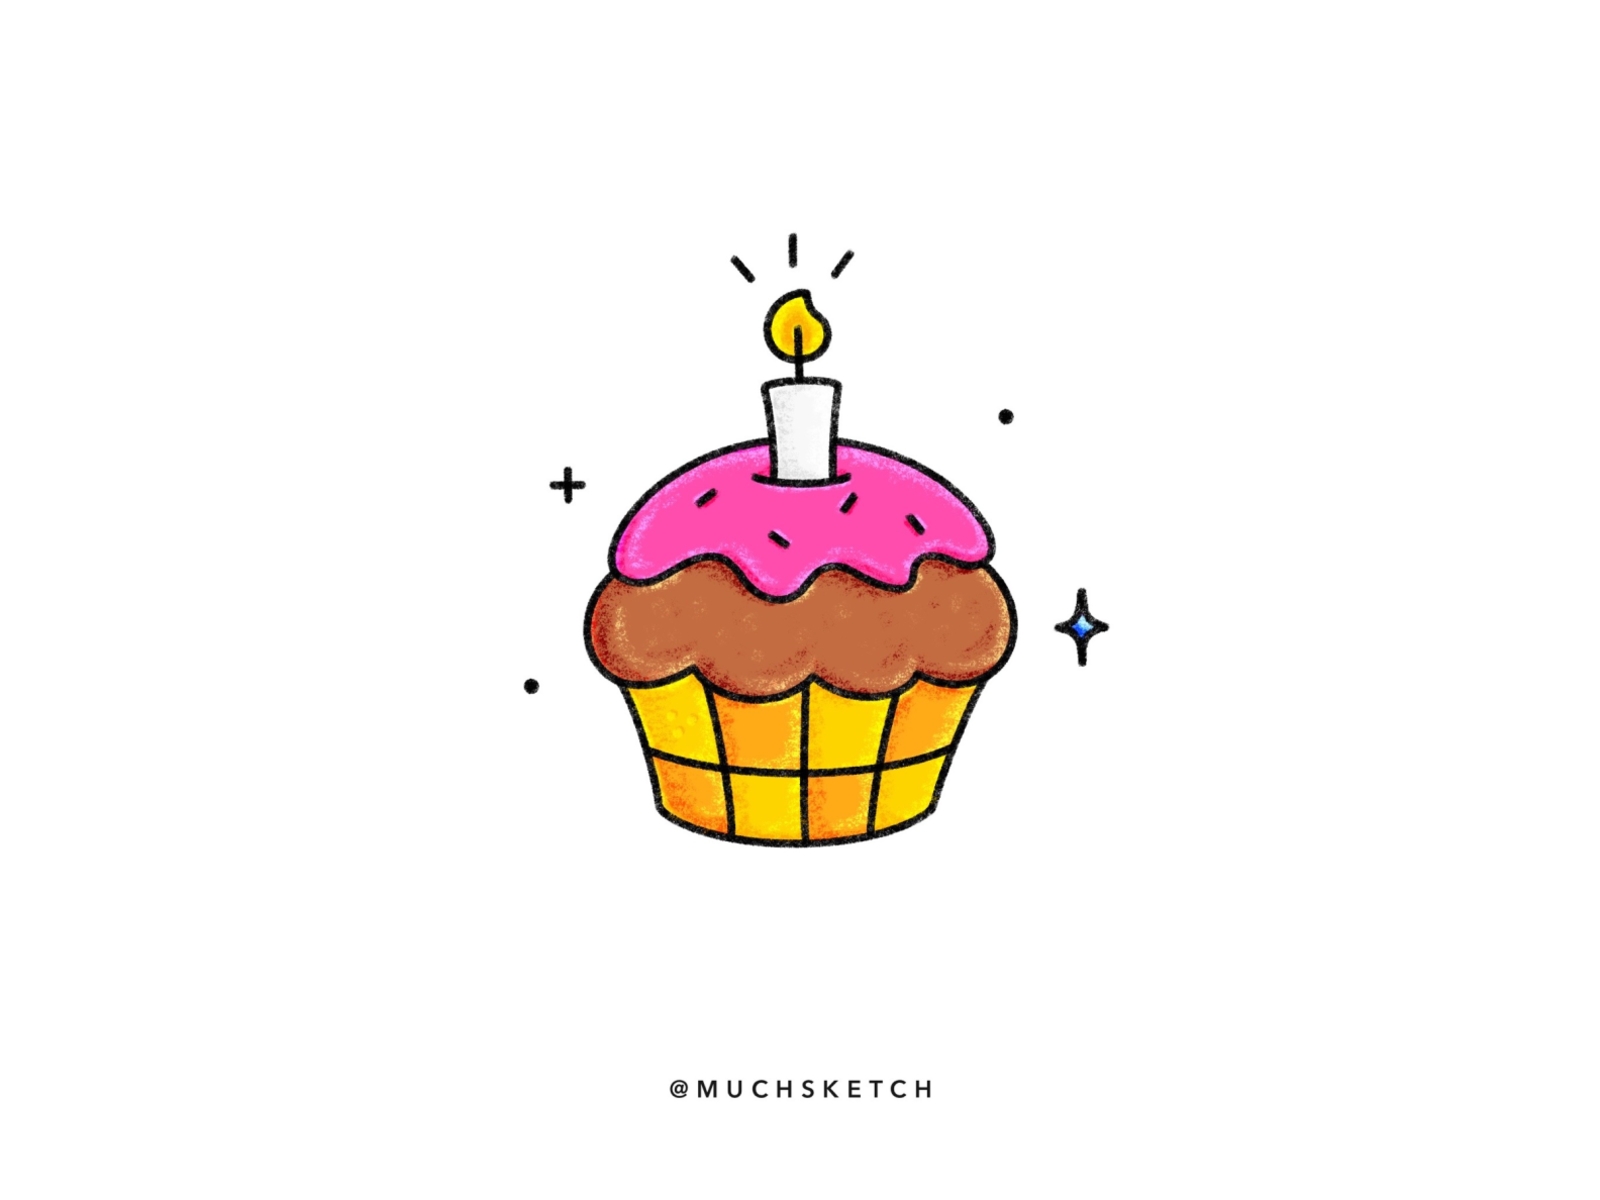 Birthday Cupcake drawing free image download